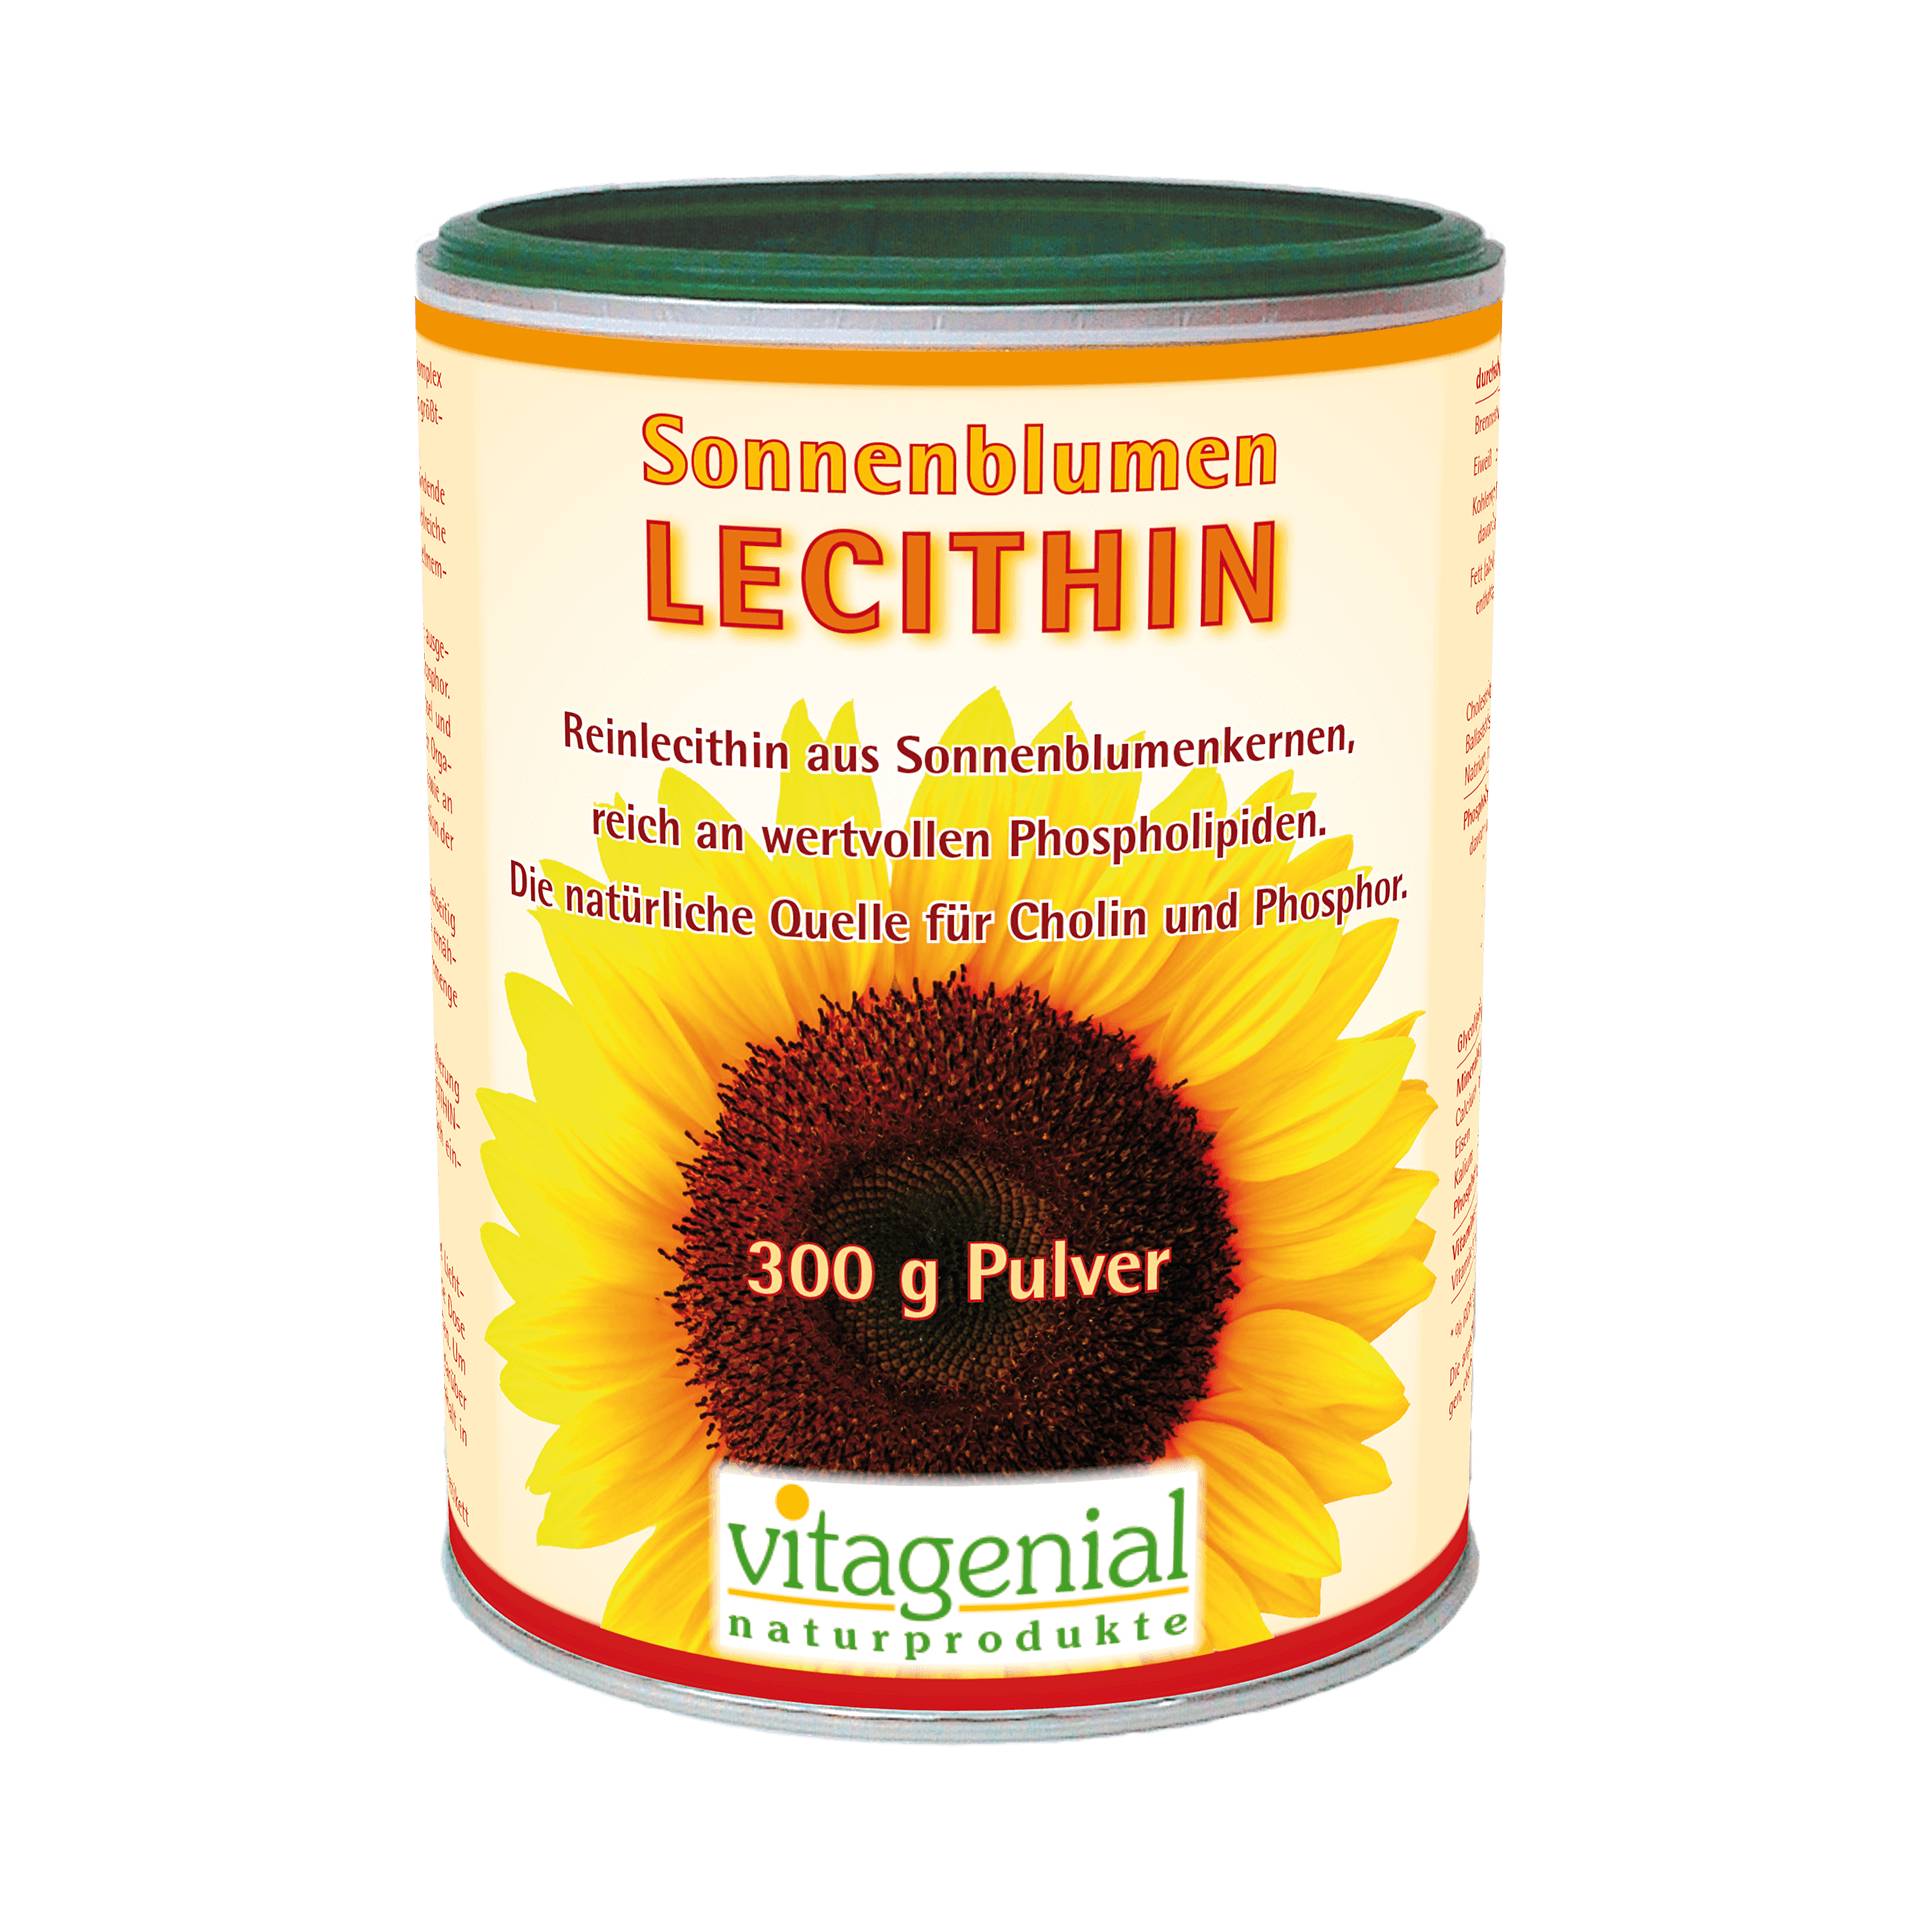 Sonnenblumen-Lecithin, 300 g von biogenial Naturprodukte